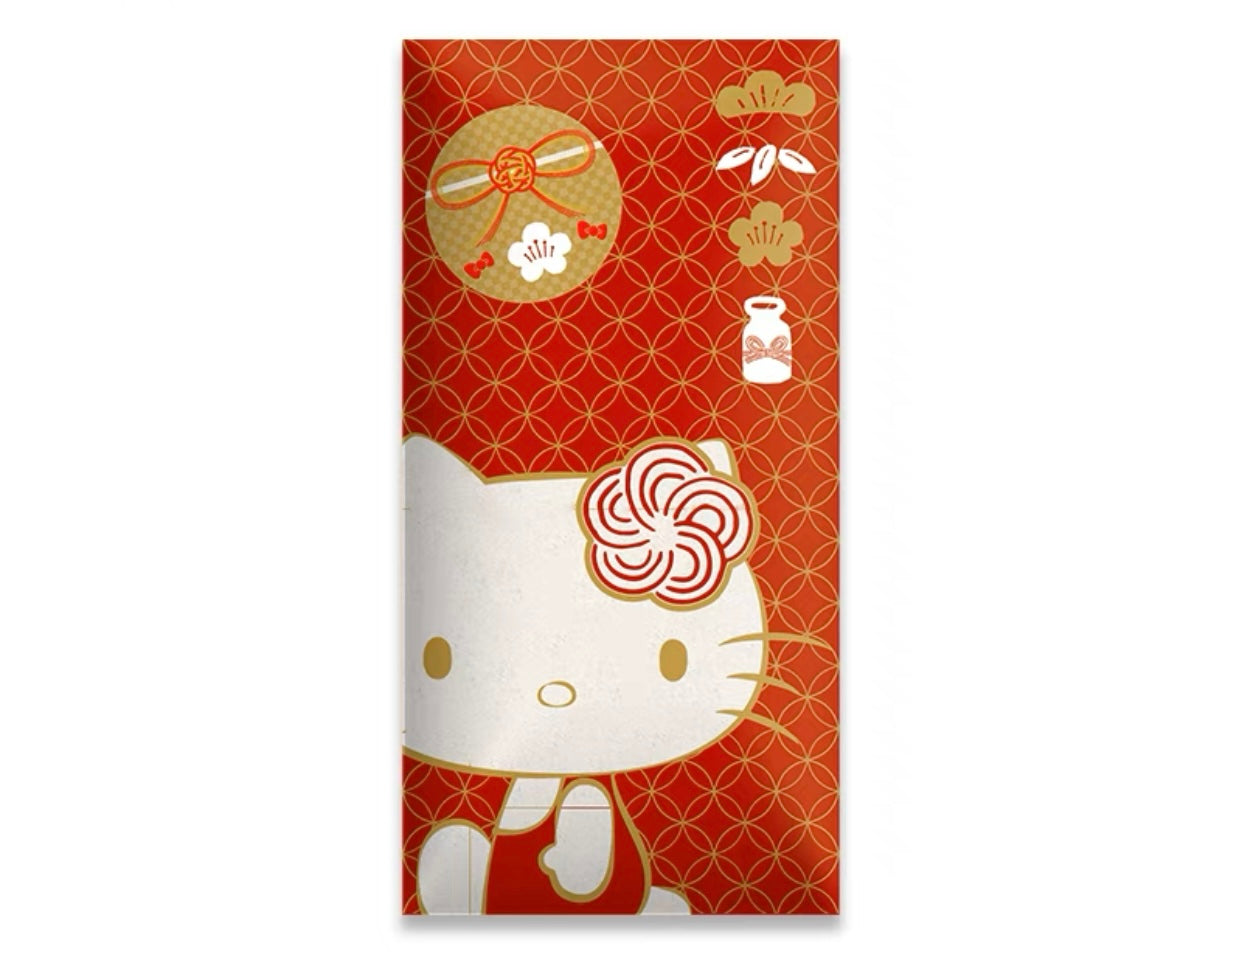 Hello Kitty Red Envelope | Sanrio Red Envelopes | GoodChoyice